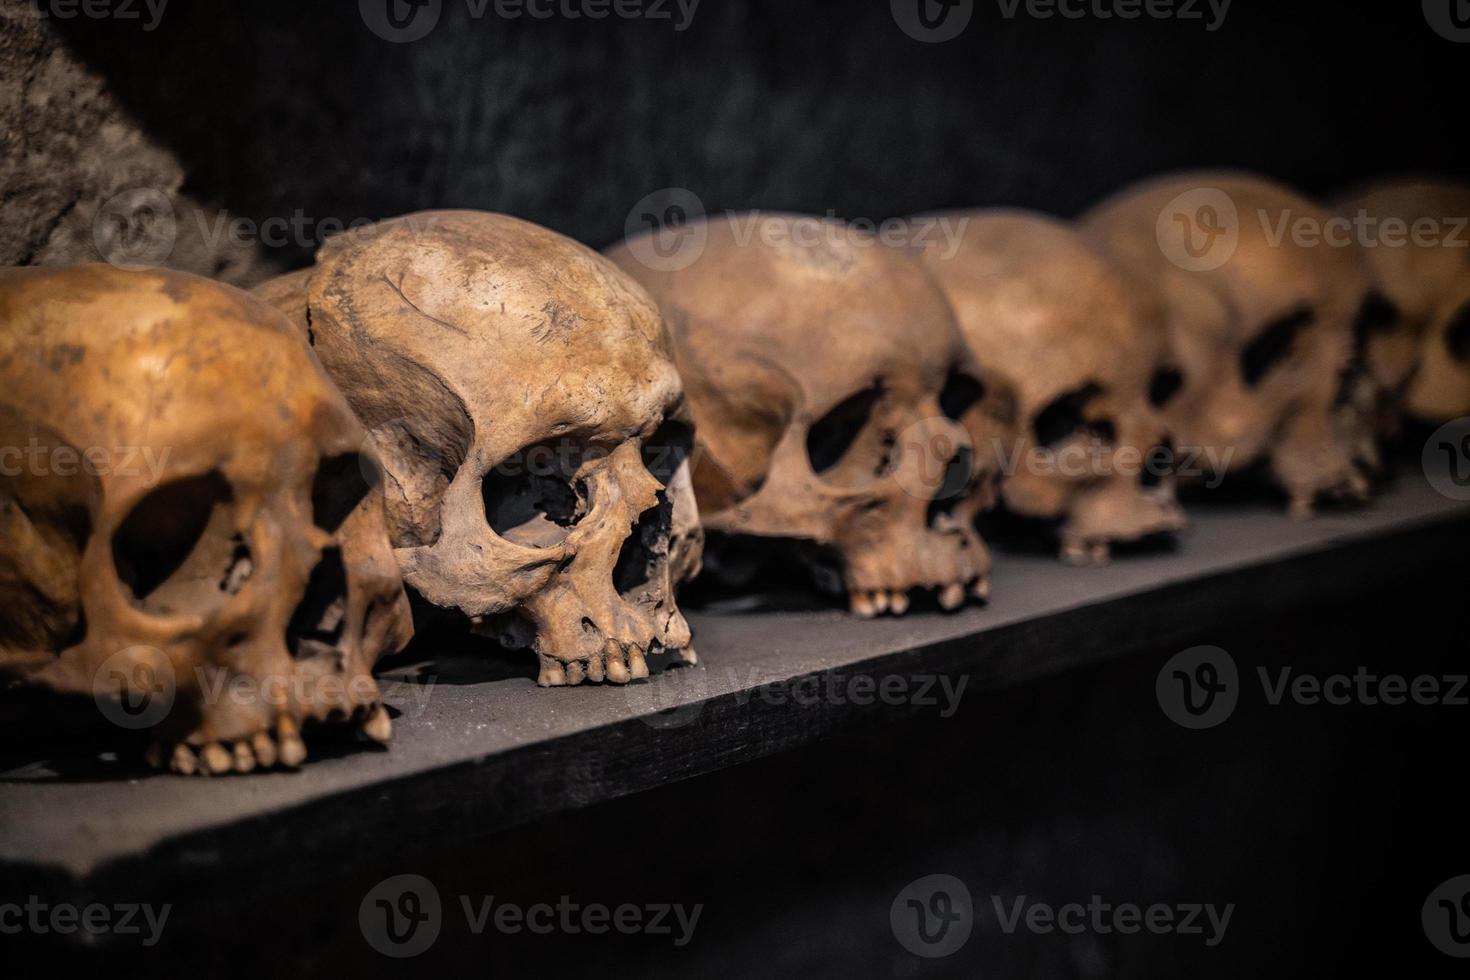 de nombreux crânes sont humains disposés en rangées sur l'étagère photo